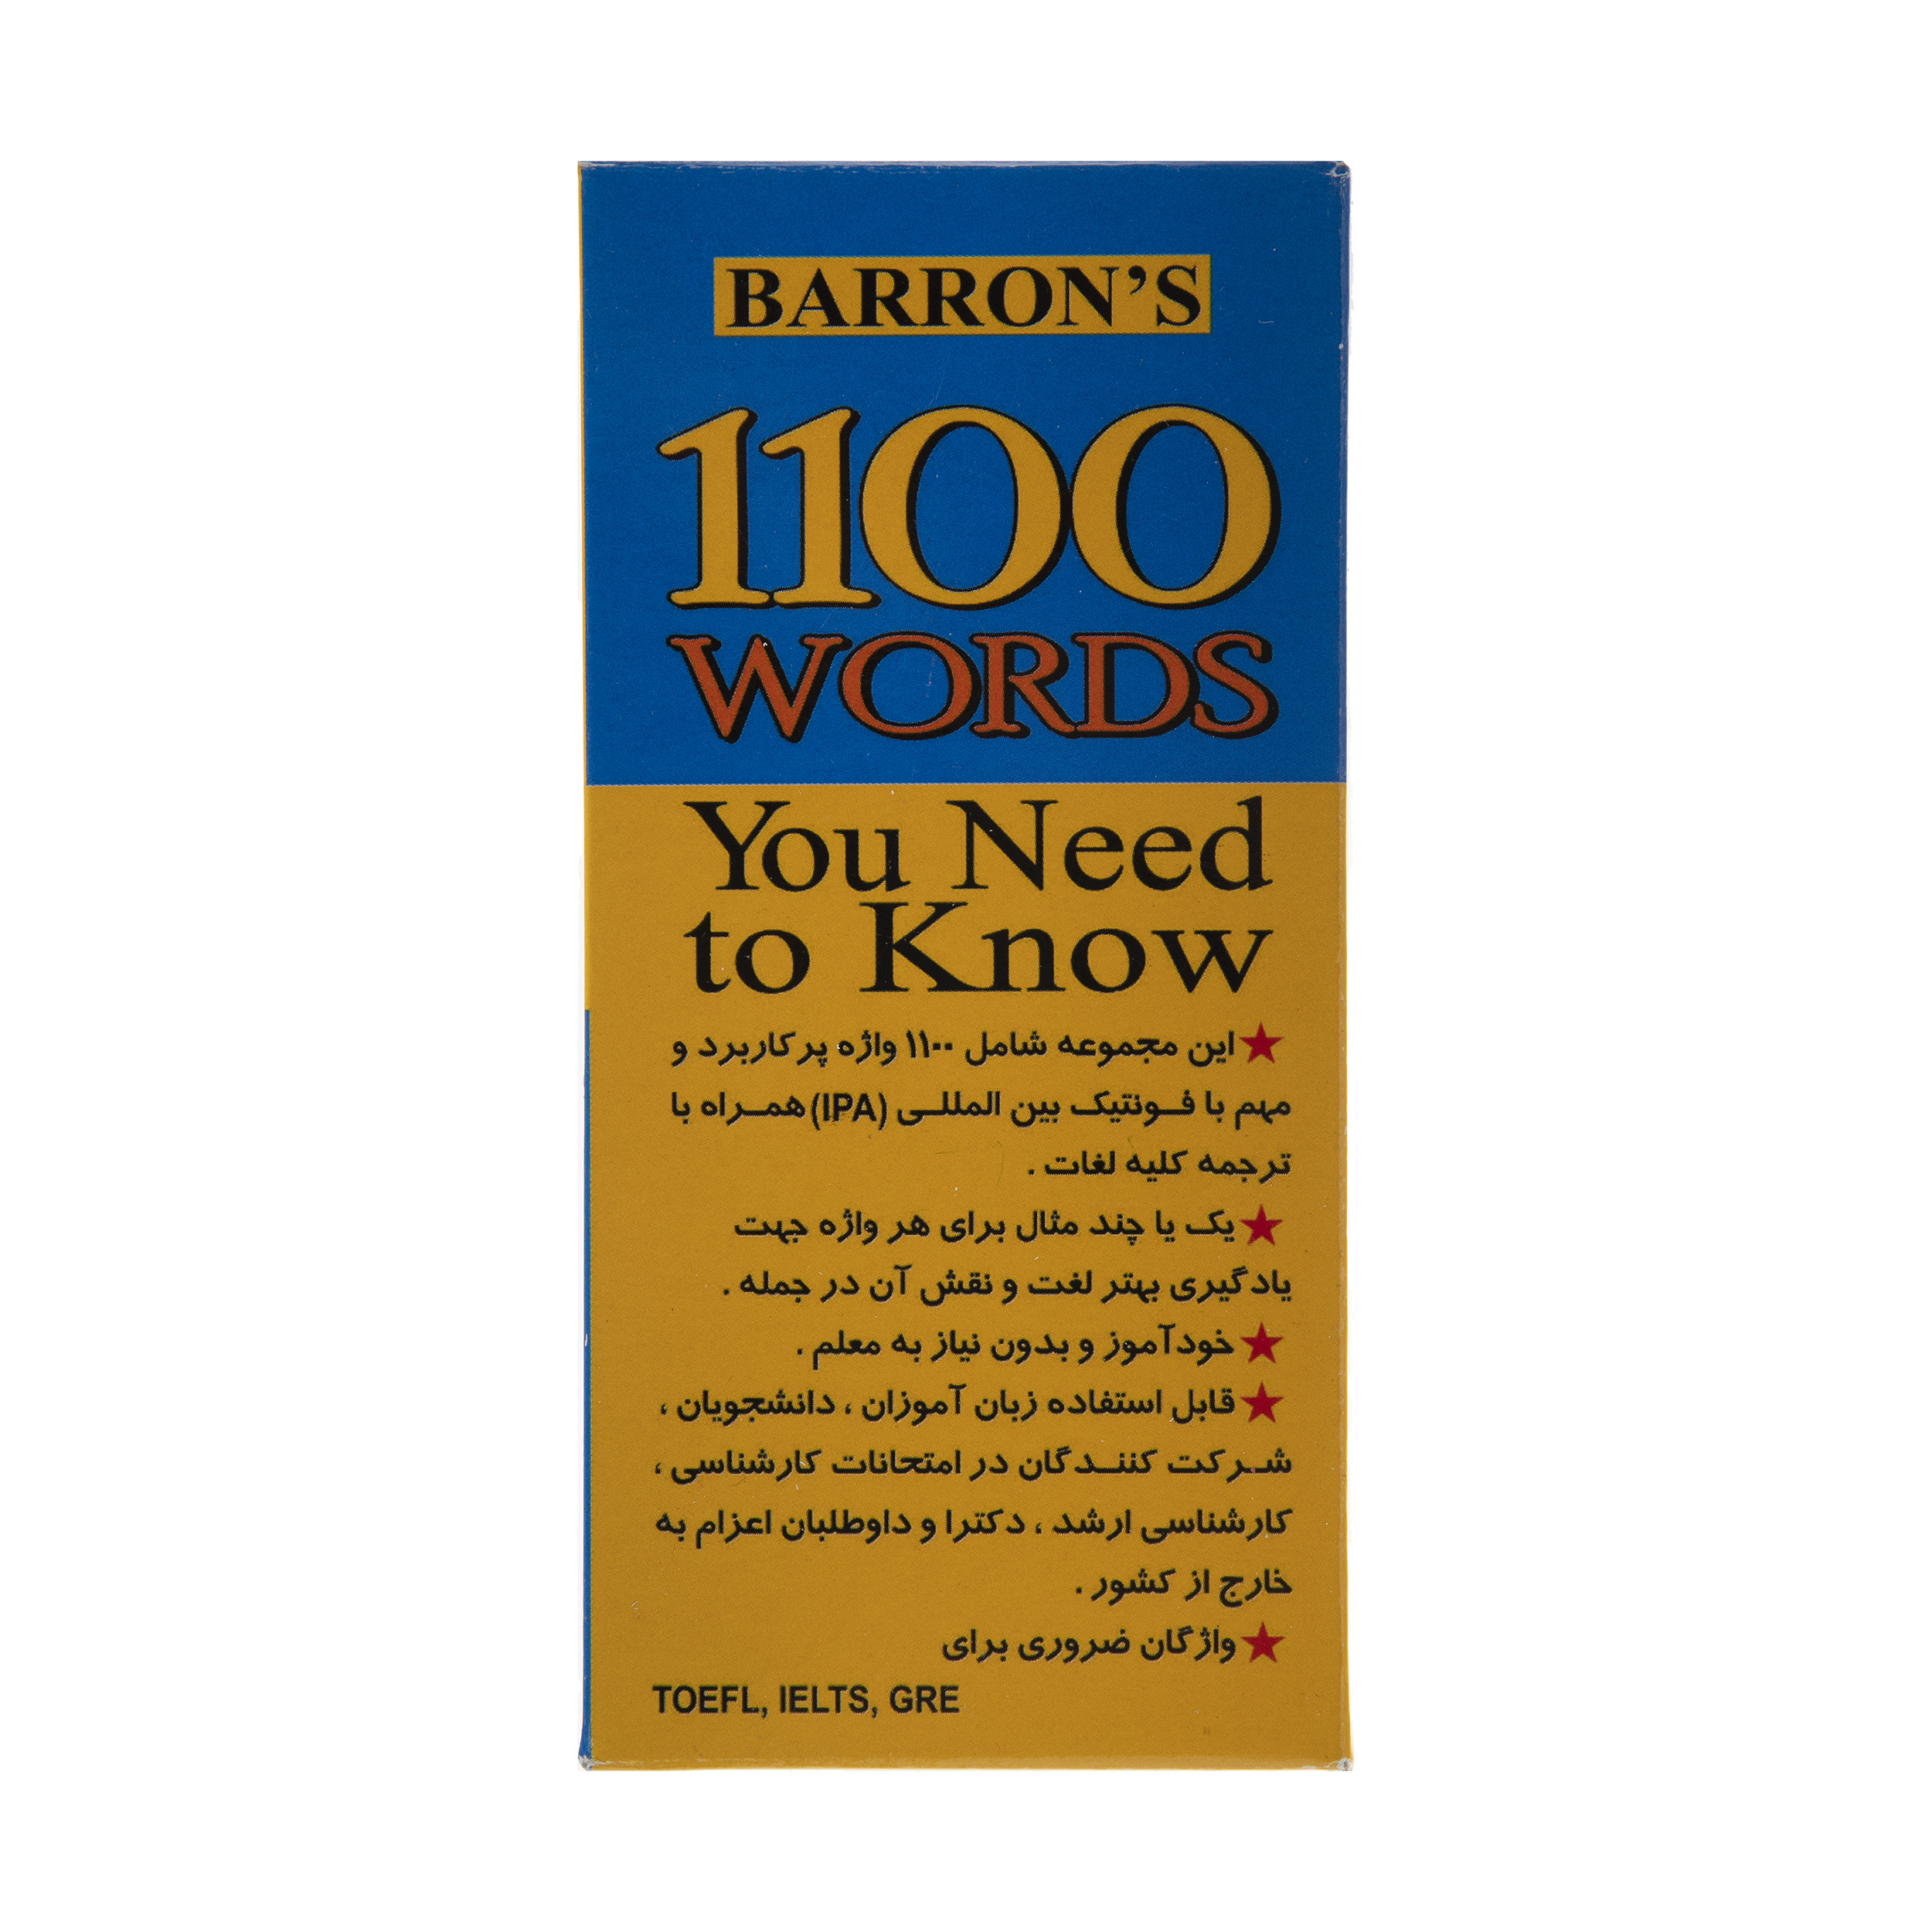 فلش کارت 1100 WORDS You Need to Know انتشارات زبان پژوه